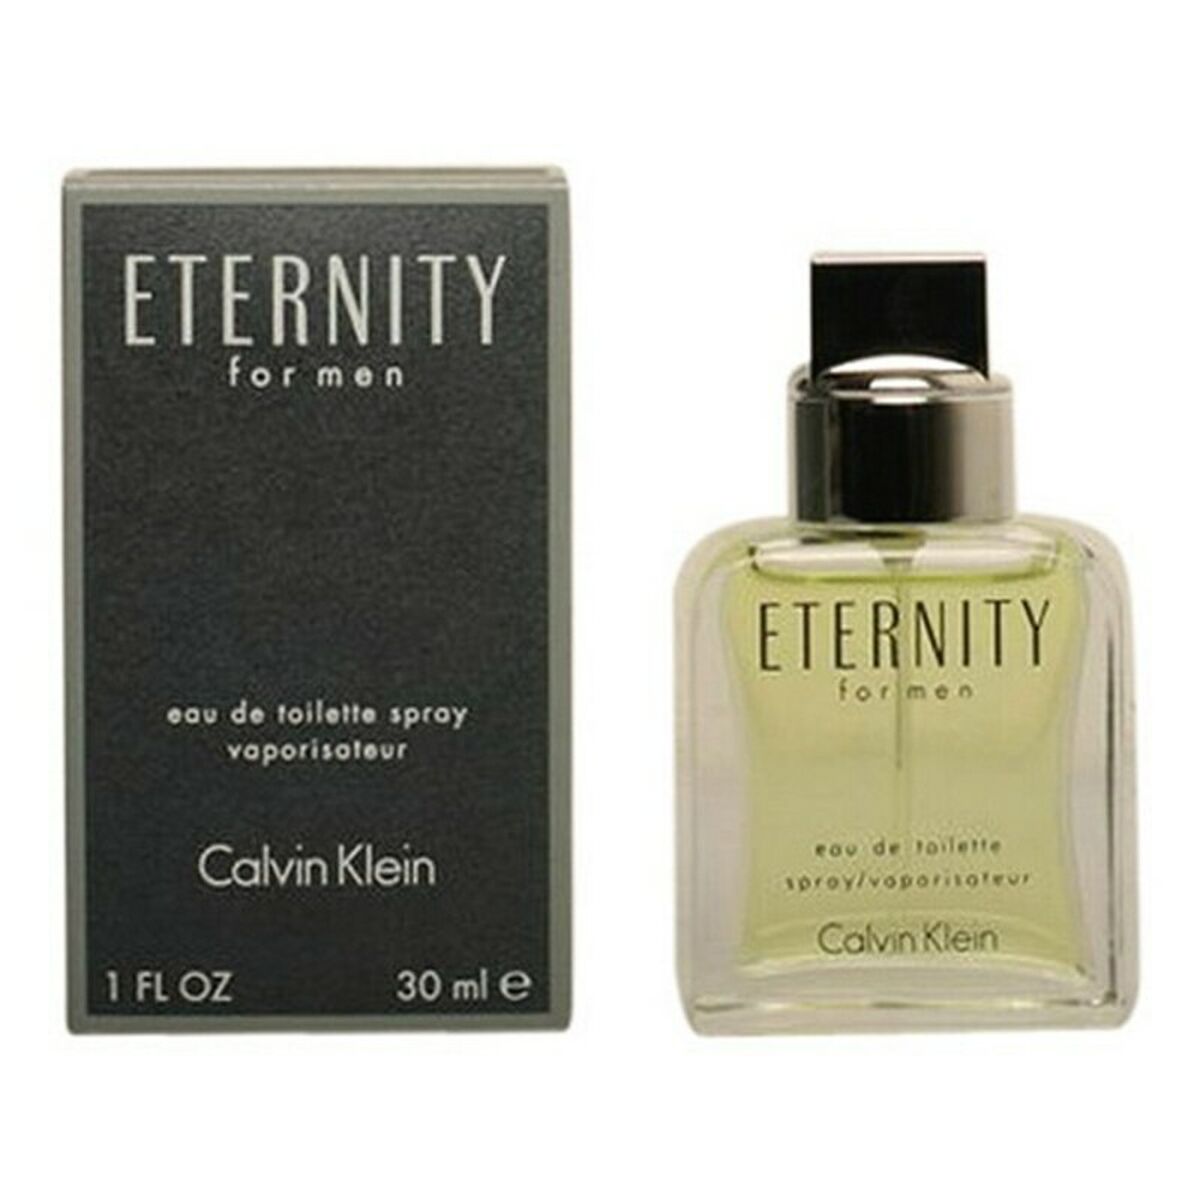 Parfum Homme Eternity Calvin Klein EDT 200 ml